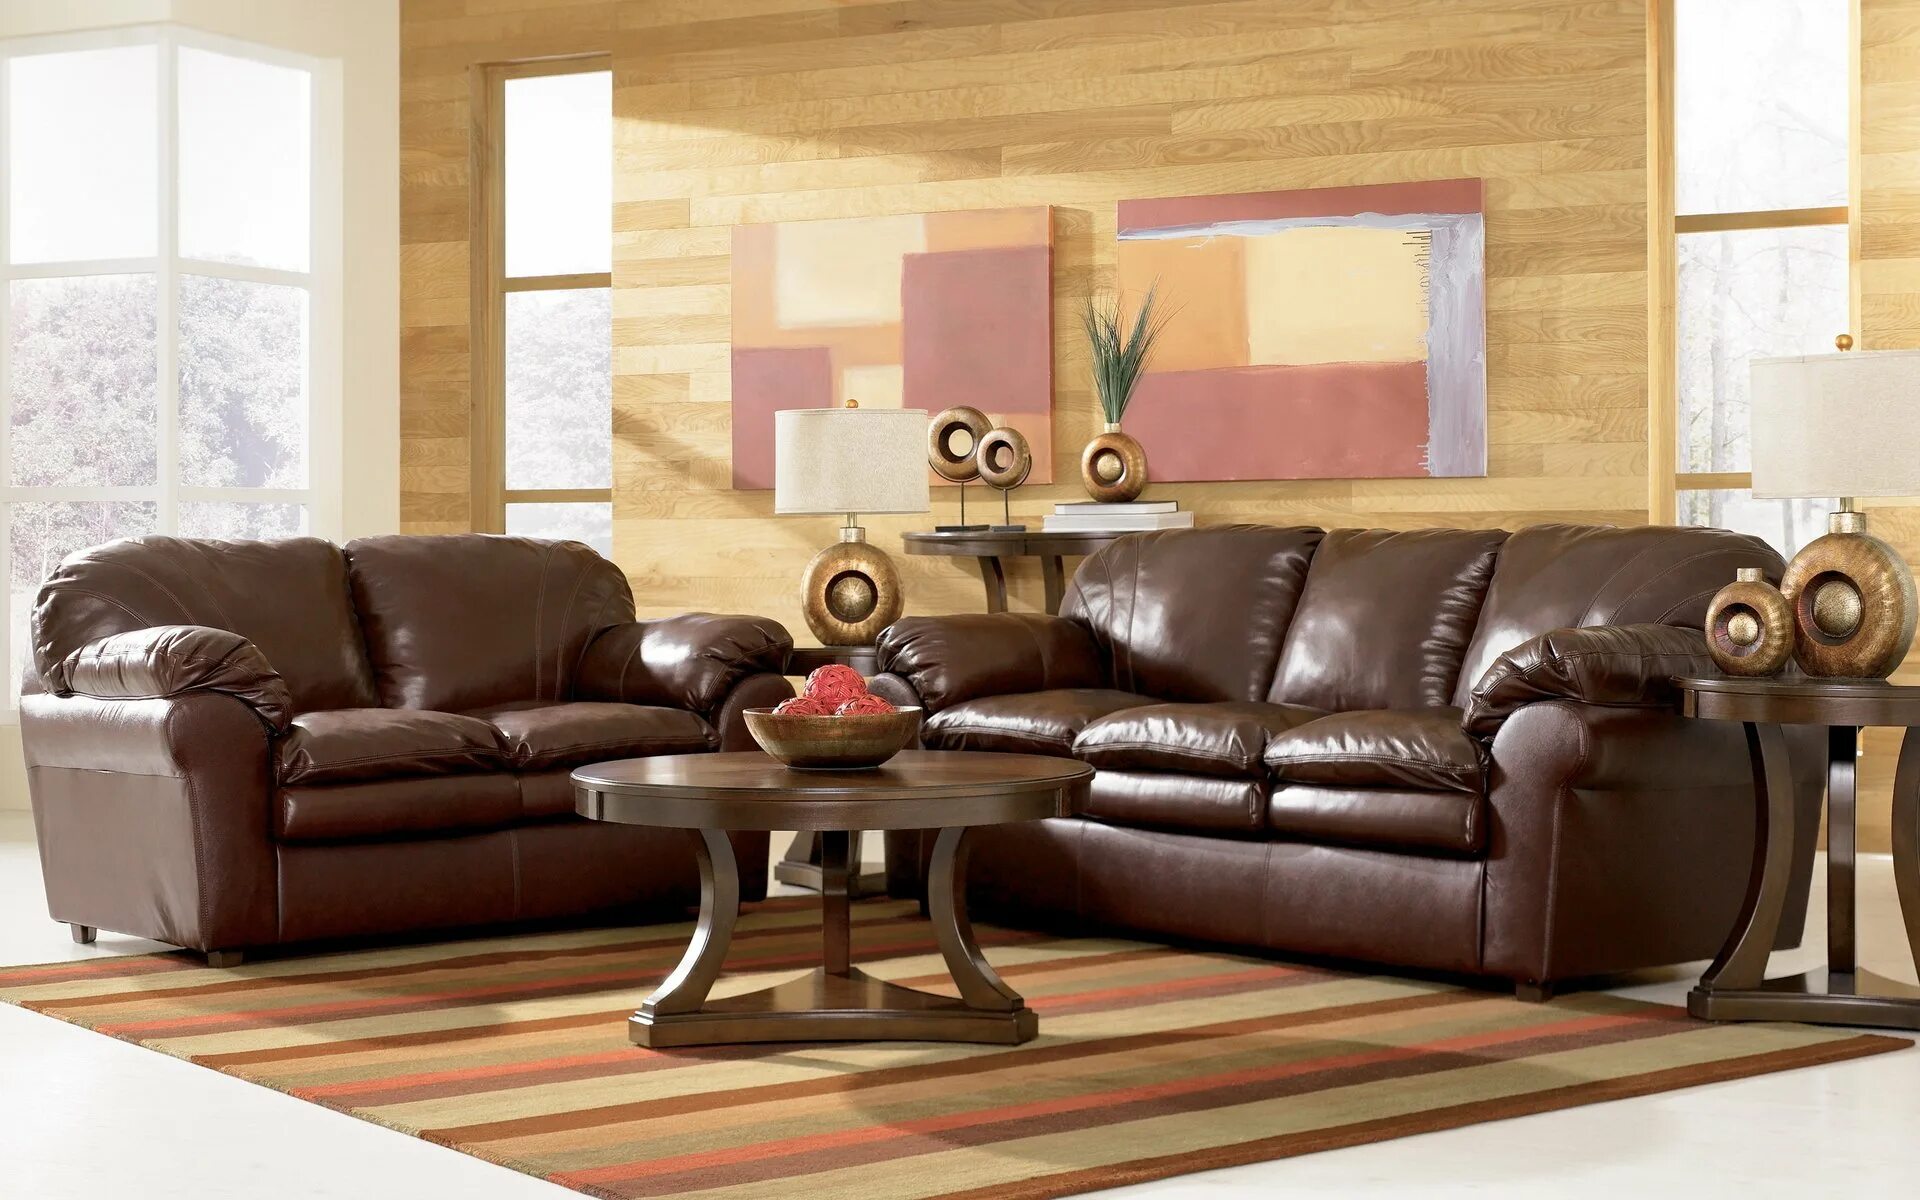 Обои к коричневой мебели. Кожаная мебель в интерьере. Кожаная мягкая мебель для гостиной. Коричневый кожаный диван в гостиную. Кожаная коричневая мебель в интерьере.